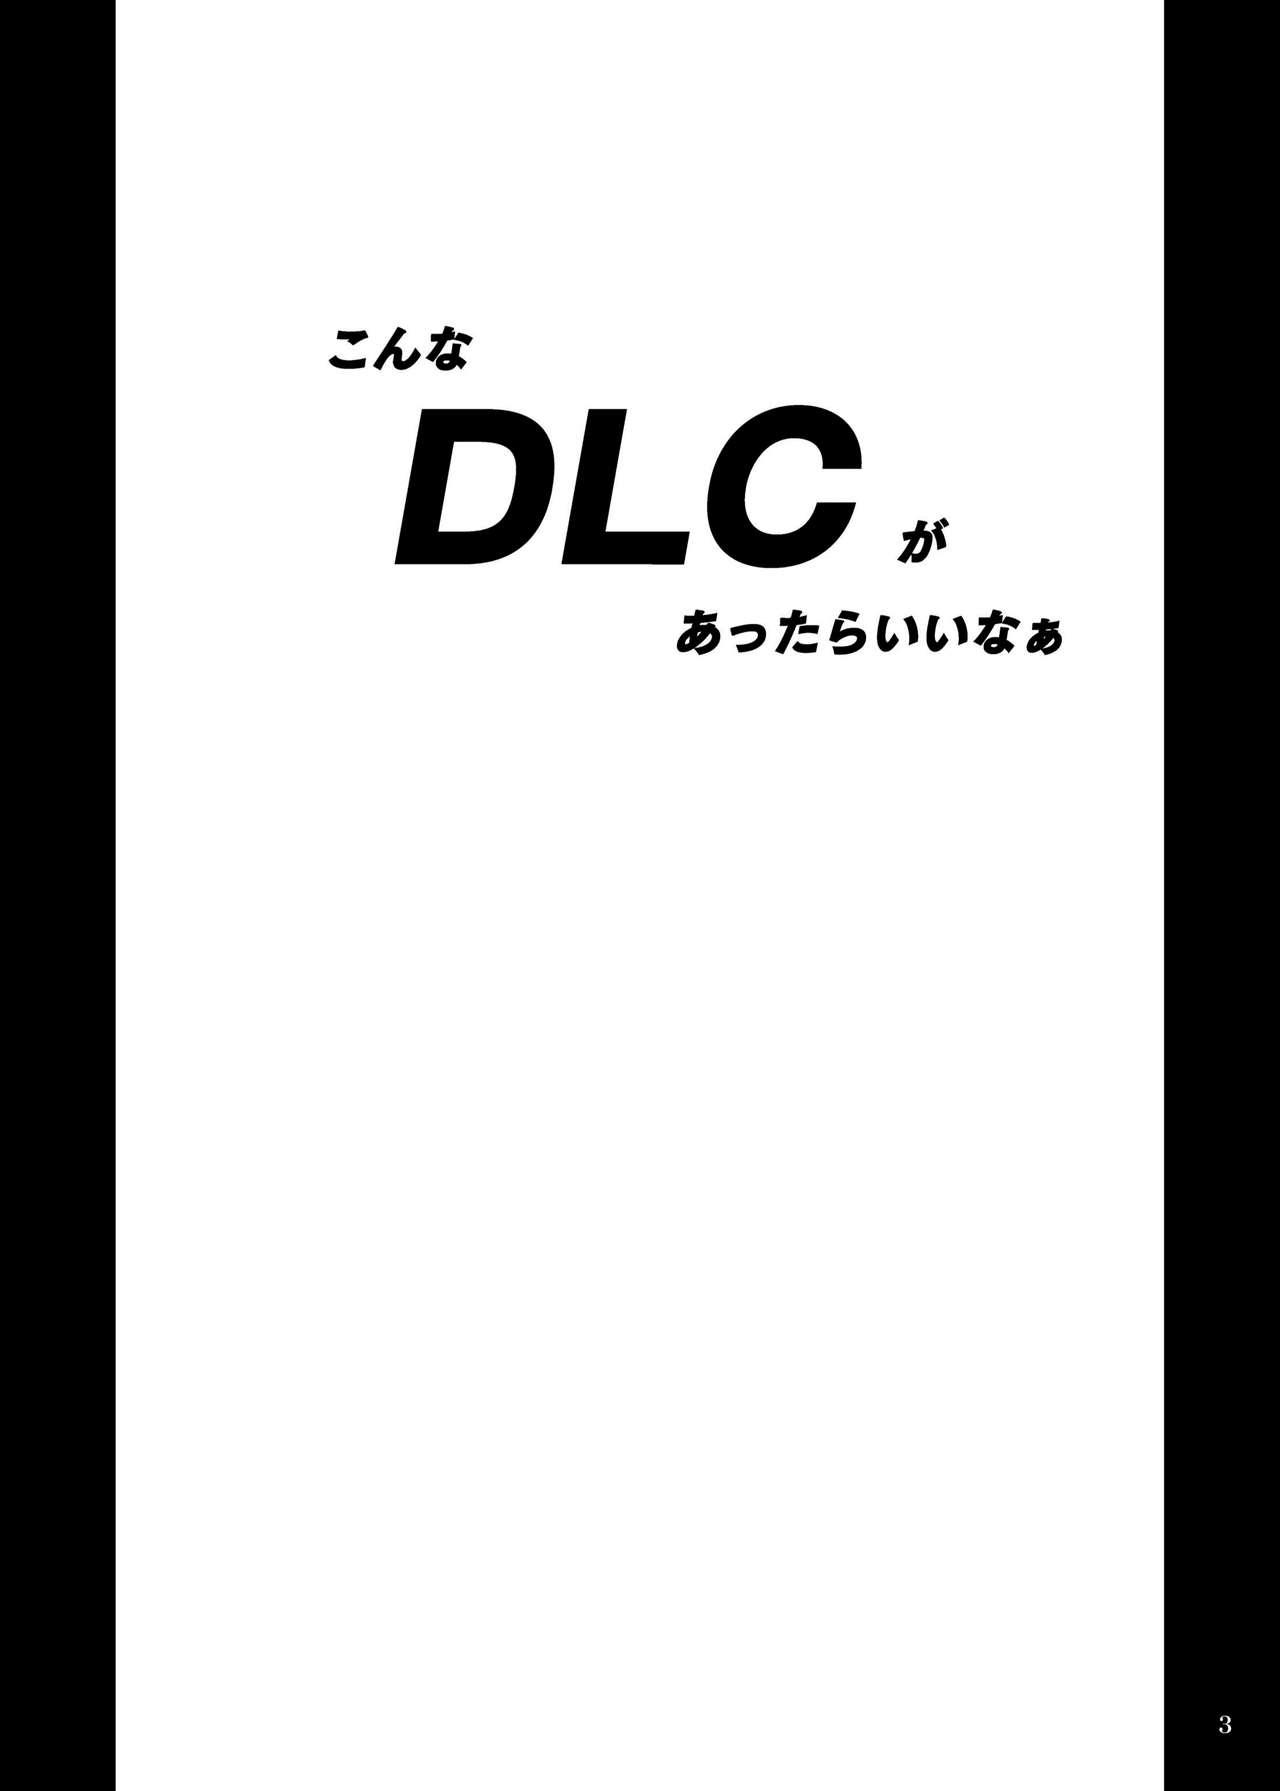 DLC 1